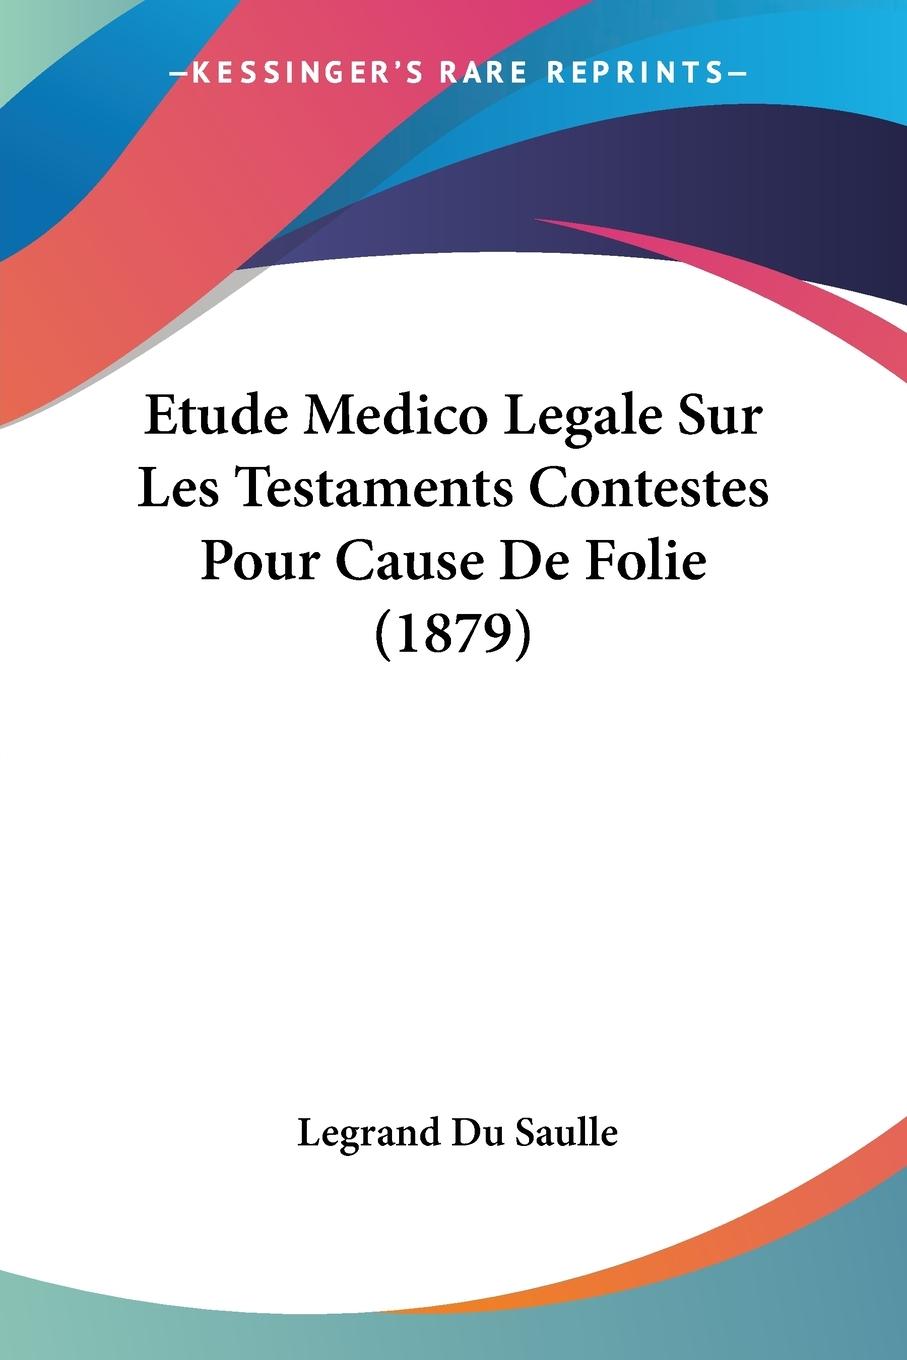 Etude Medico Legale Sur Les Testaments Contestes Pour Cause De Folie (1879) - Saulle, Legrand Du